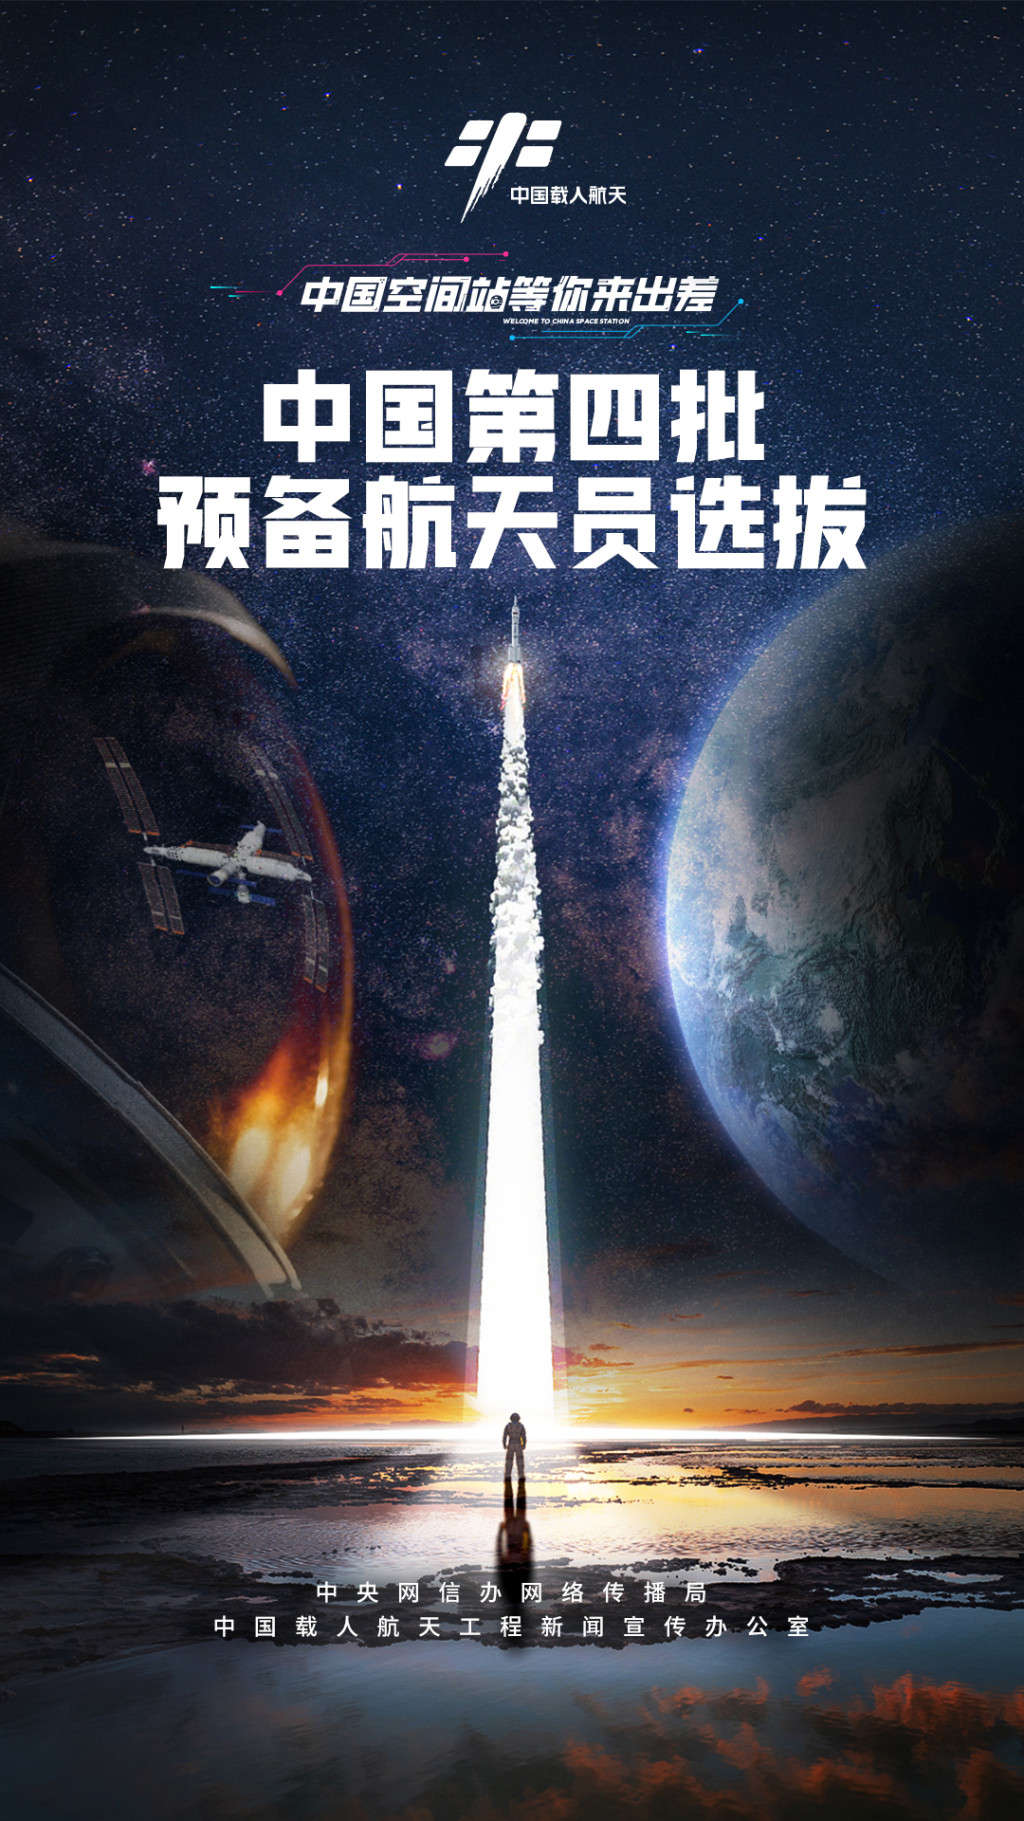 國家第四批預備航天員選拔工作已啟動。中國載人航天工程辦公室圖片